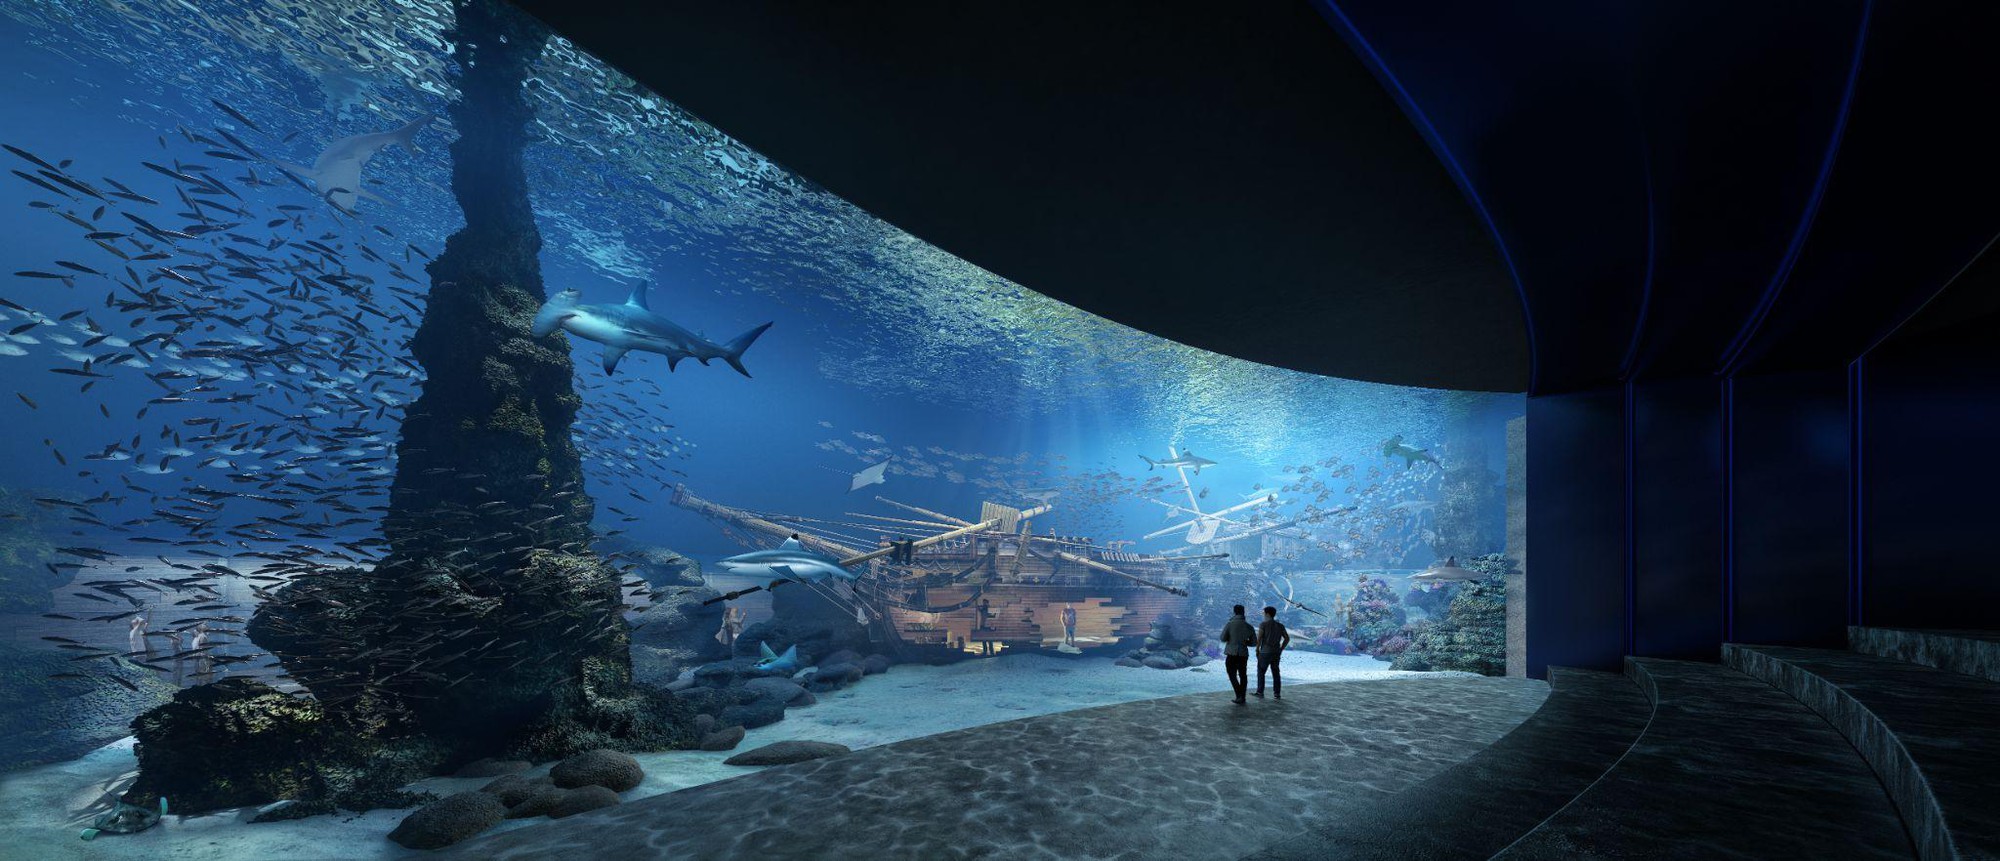 Thủy cung Lotte World Hà Nội - Thế giới đại dương đầy màu sắc sắp khai trương giữa lòng Thủ đô - Ảnh 2.